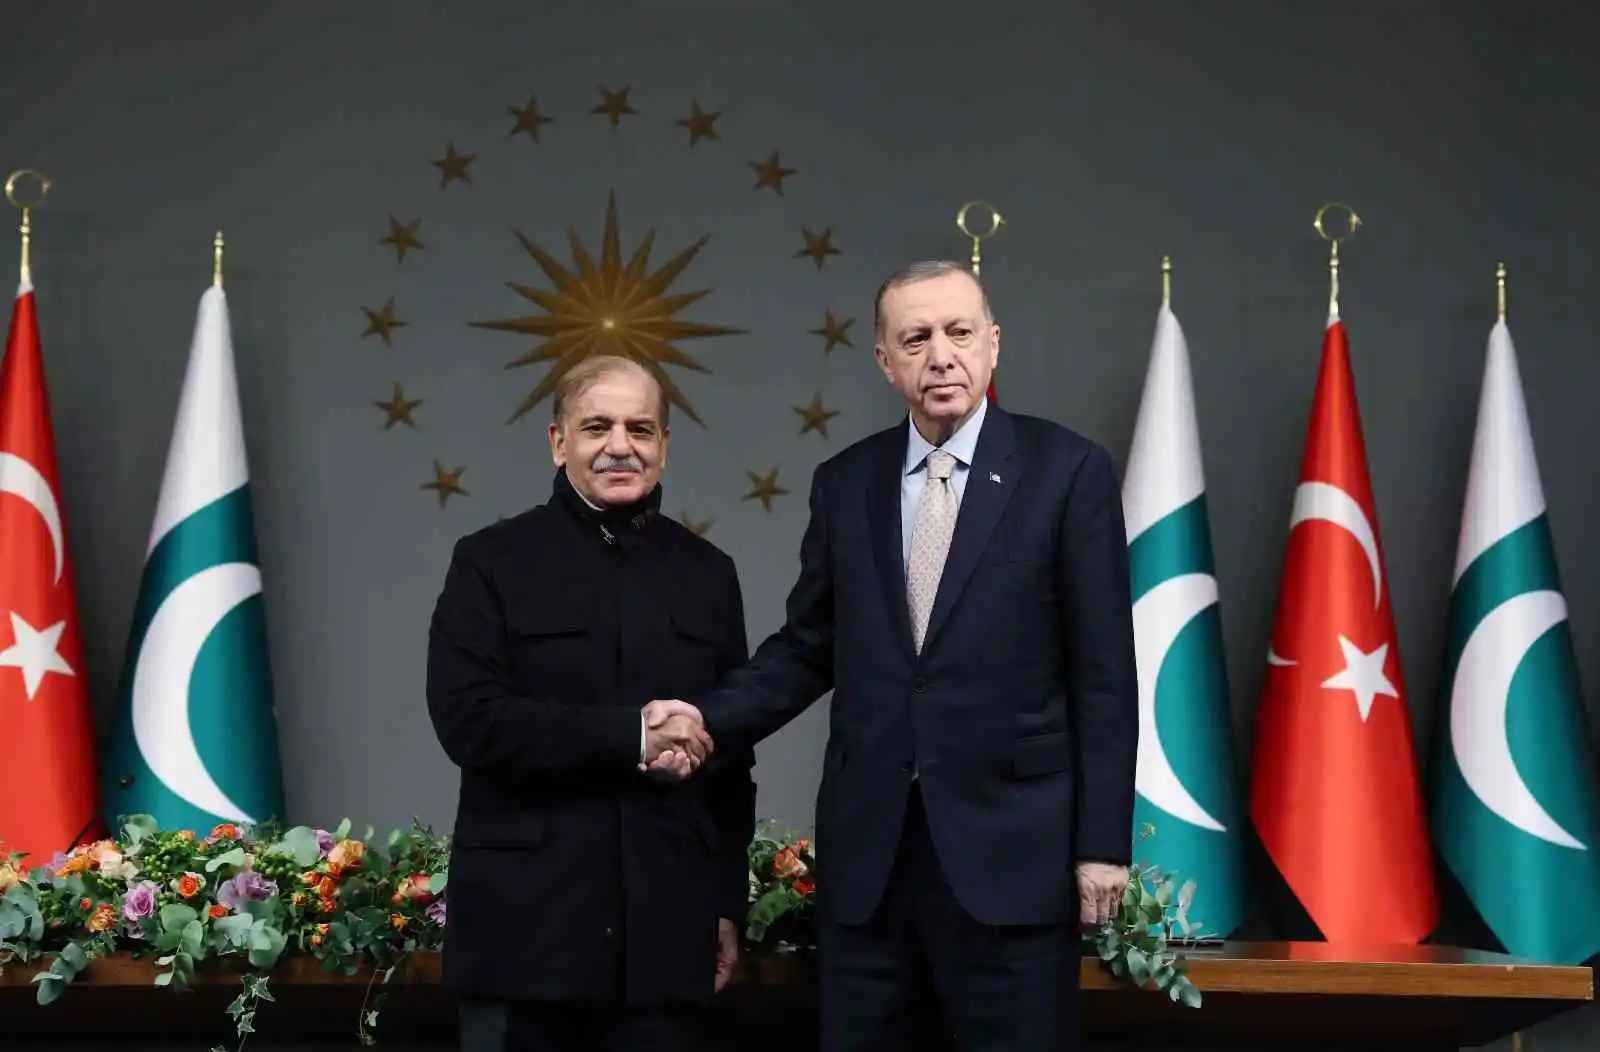 Cumhurbaşkanı Erdoğan: “Pakistan’la 5 milyar dolarlık ticaret hacmi hedefimize ulaşmak için gerekli iradeye ve kararlılığa sahibiz”
